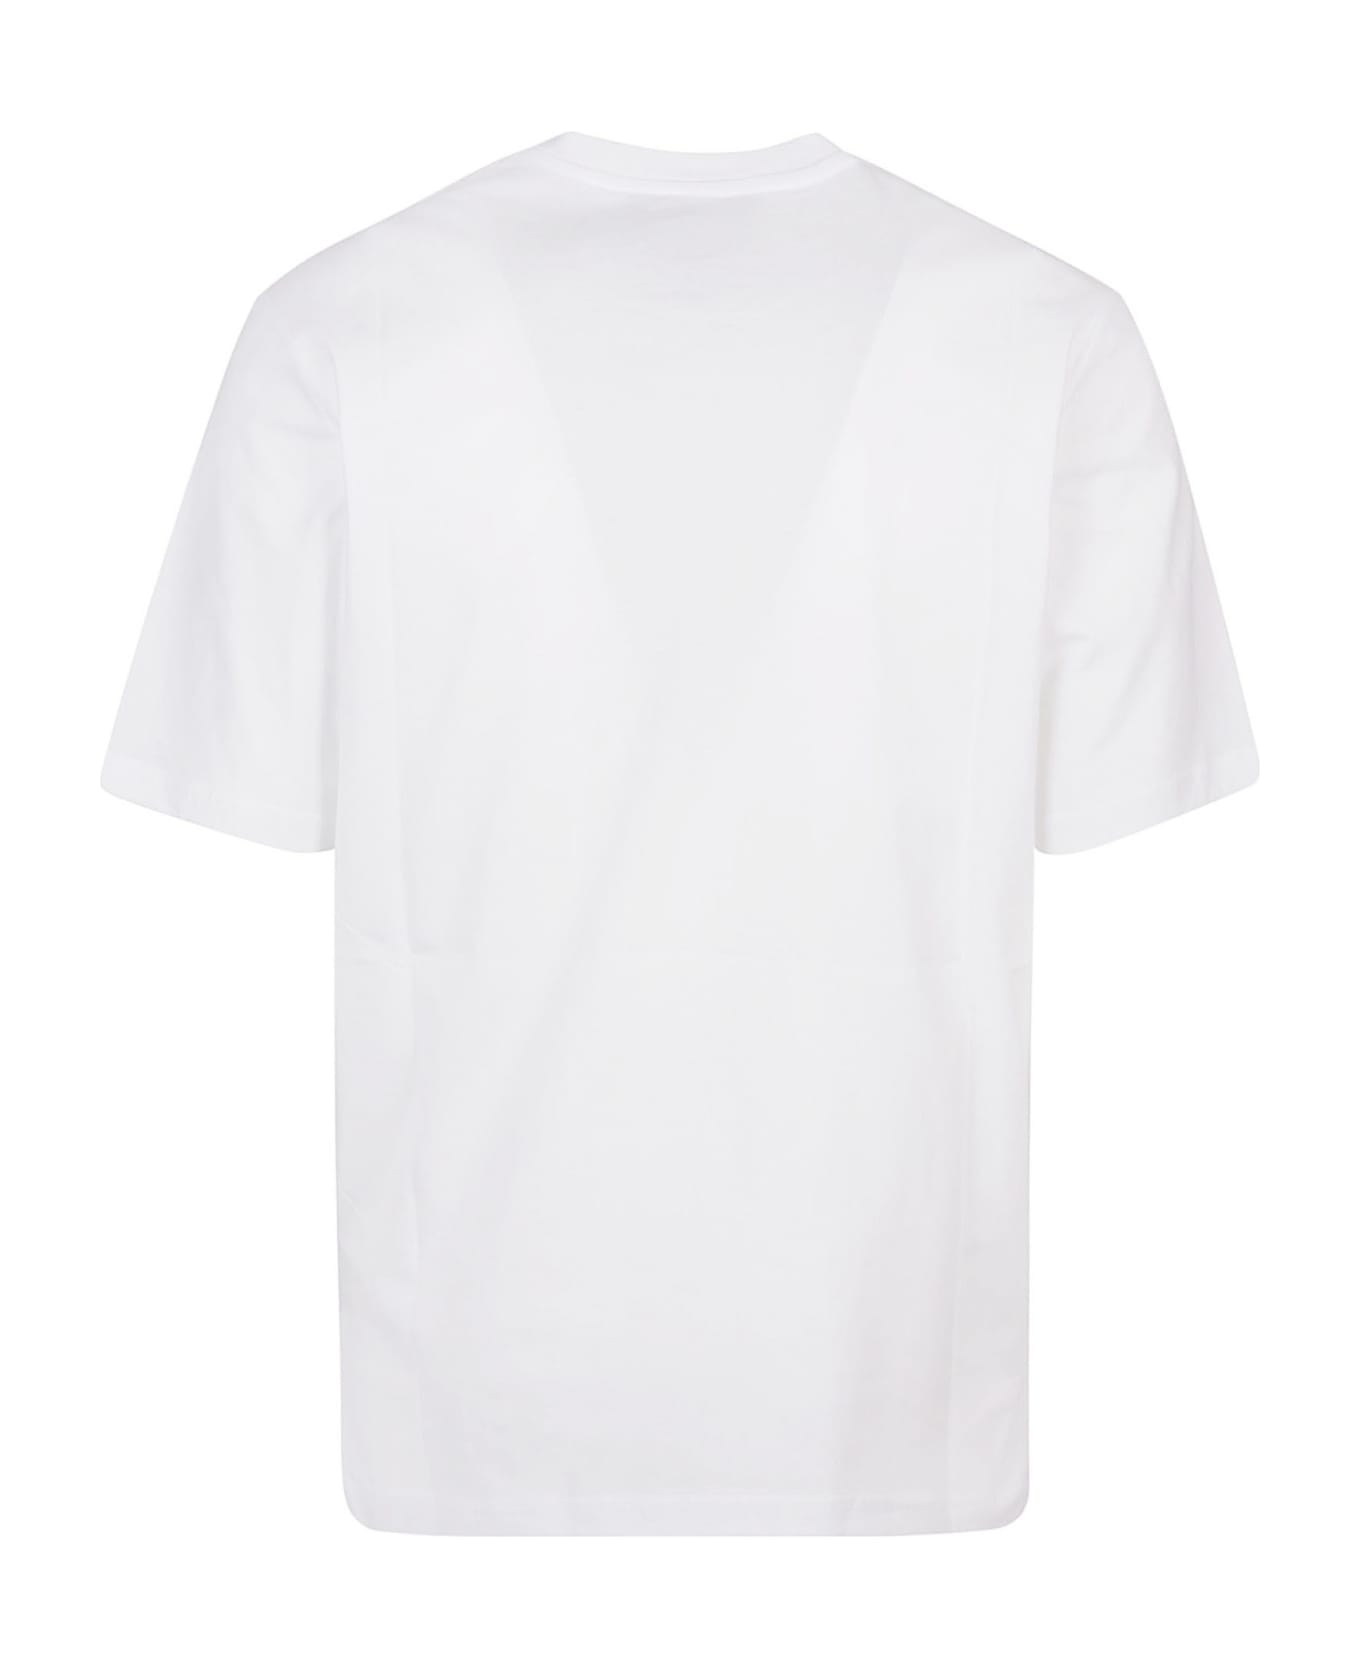 Moschino Drawn Teddy Bear T-shirt - Bianco Fantasia シャツ